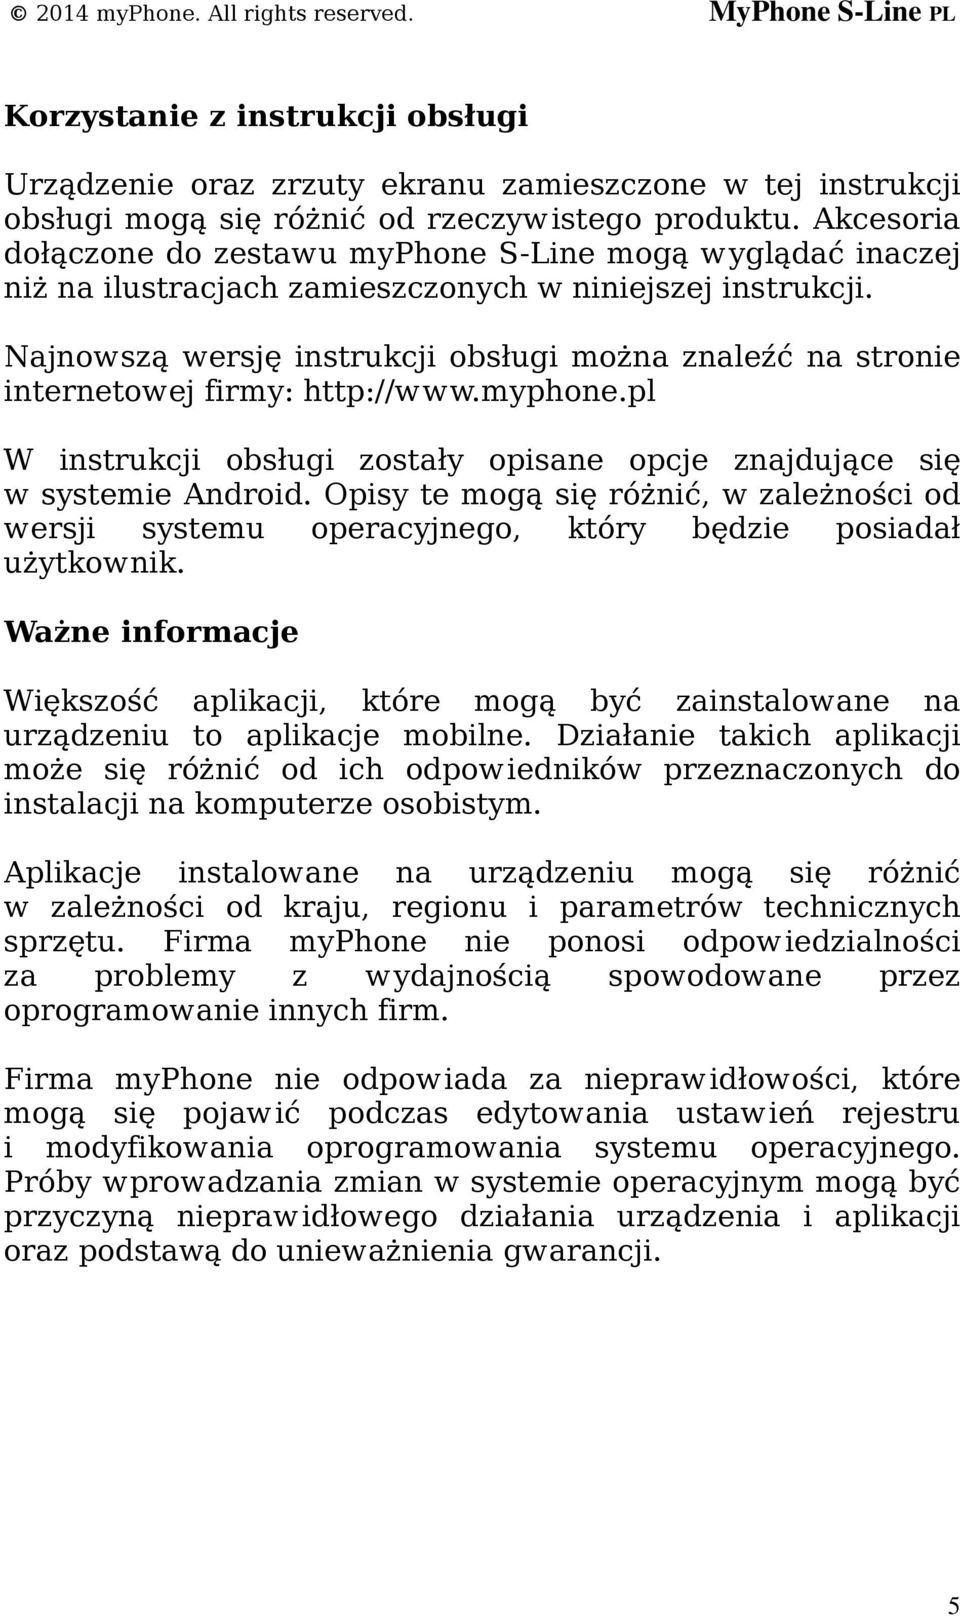 Najnowszą wersję instrukcji obsługi można znaleźć na stronie internetowej firmy: http://www.myphone.pl W instrukcji obsługi zostały opisane opcje znajdujące się w systemie Android.